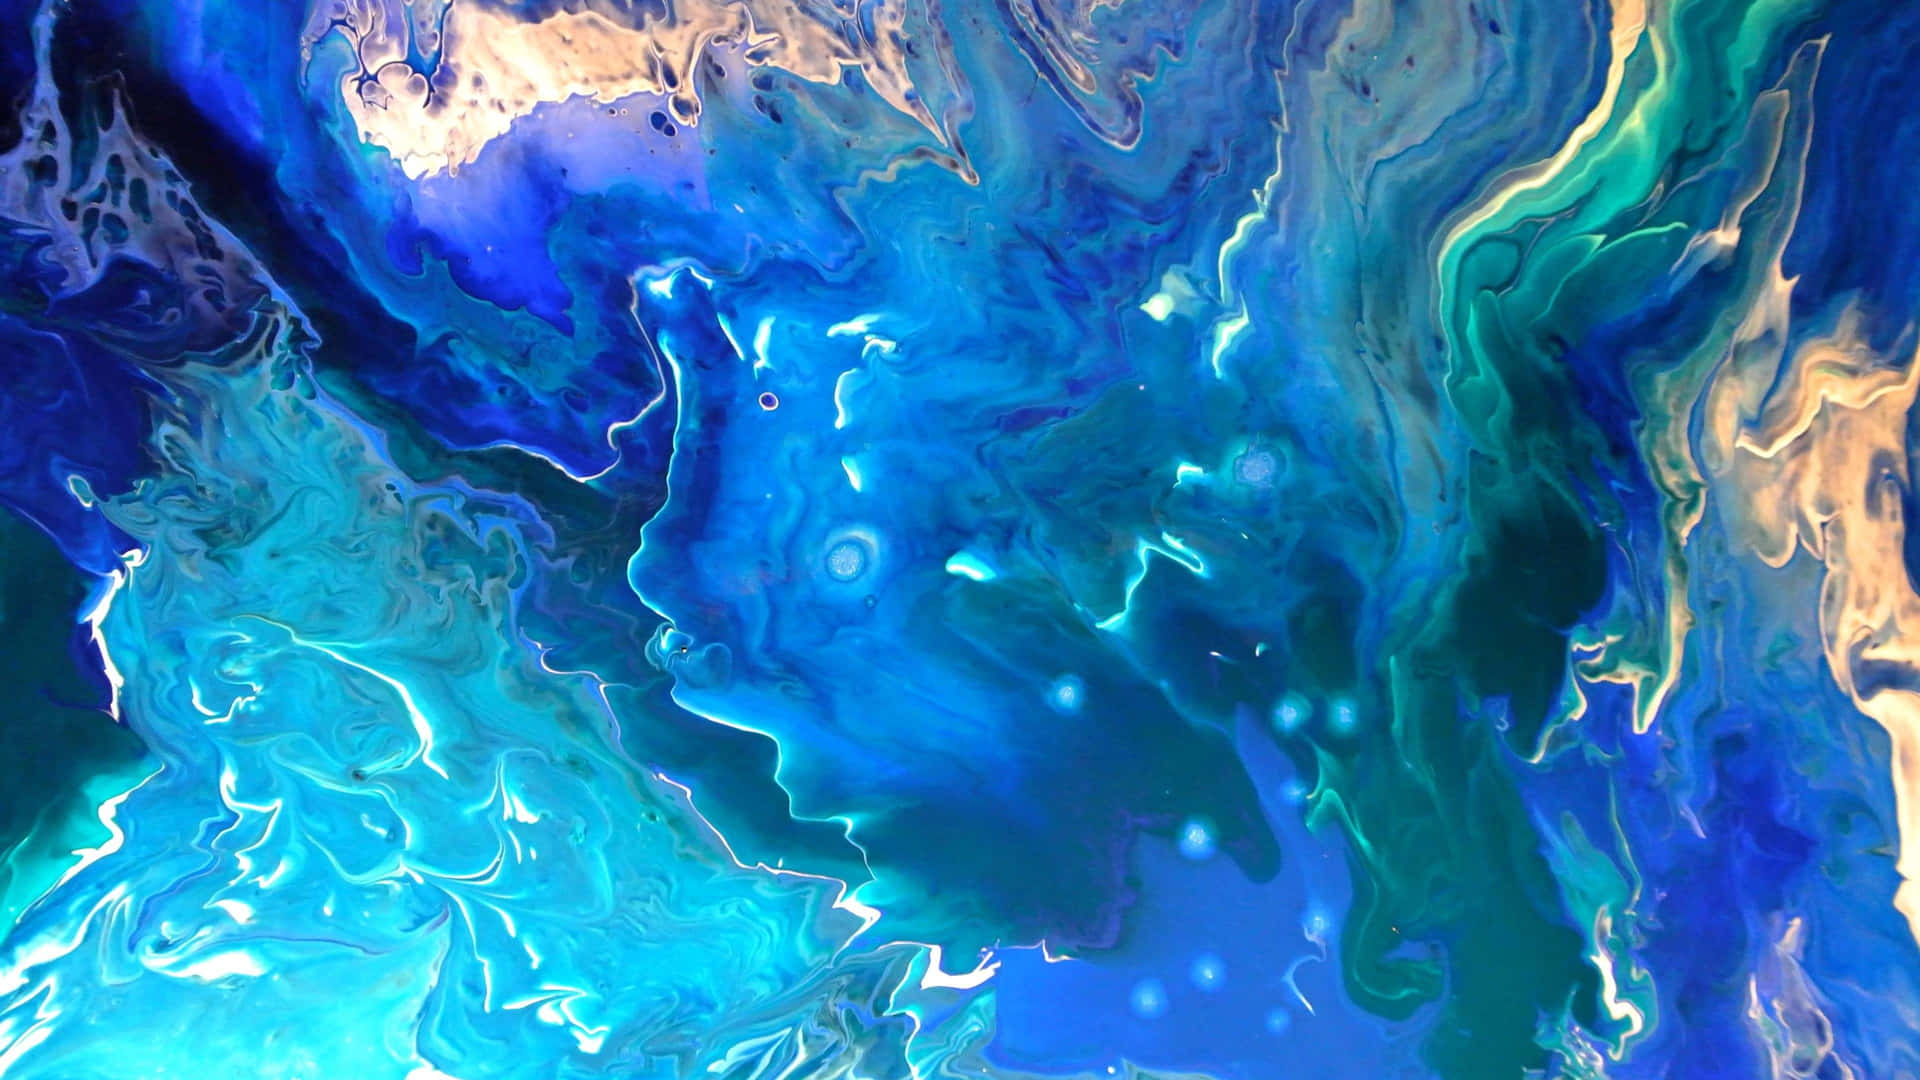 Abstract Azure Ocean Art4 K Wallpaper